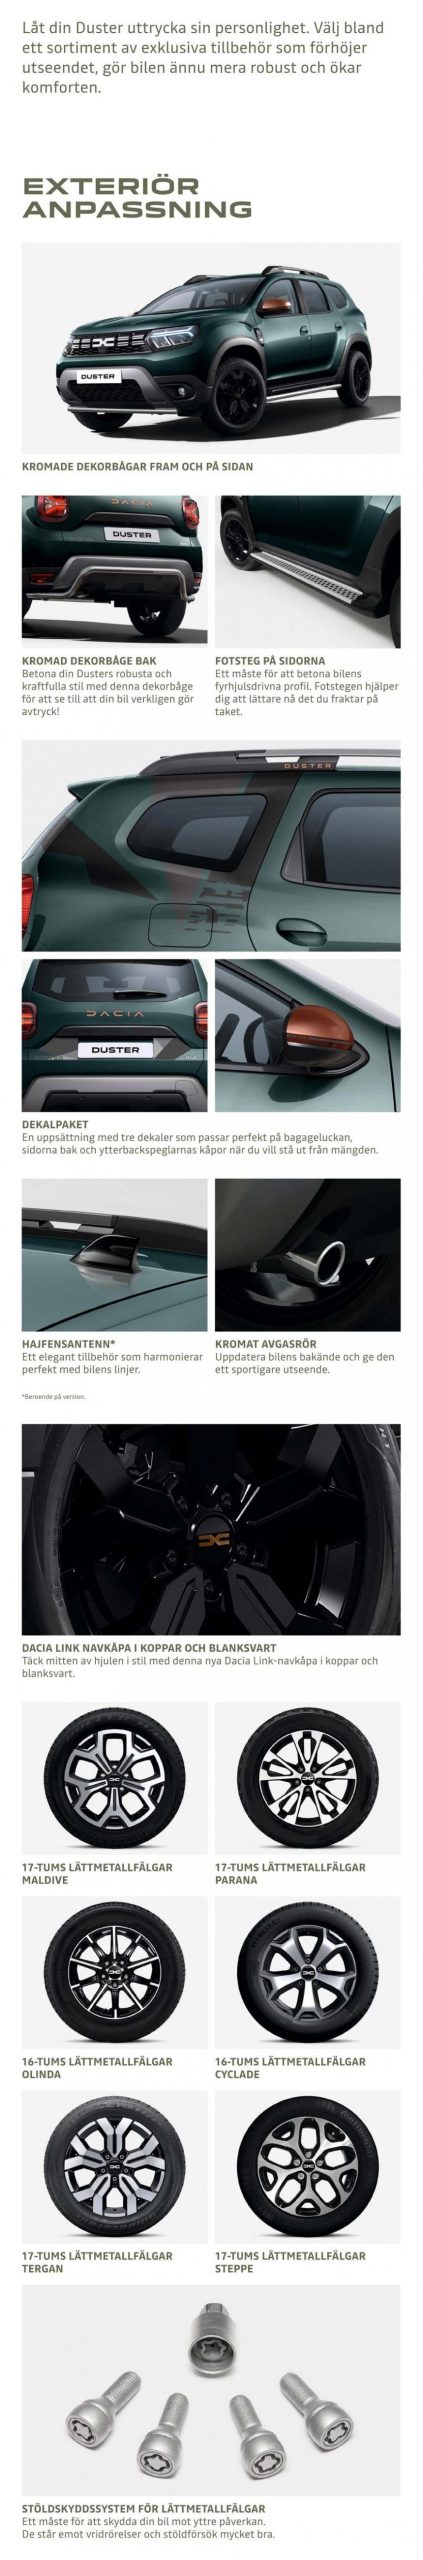 Dacia Duster - Tillbehörskatalog. Page 4